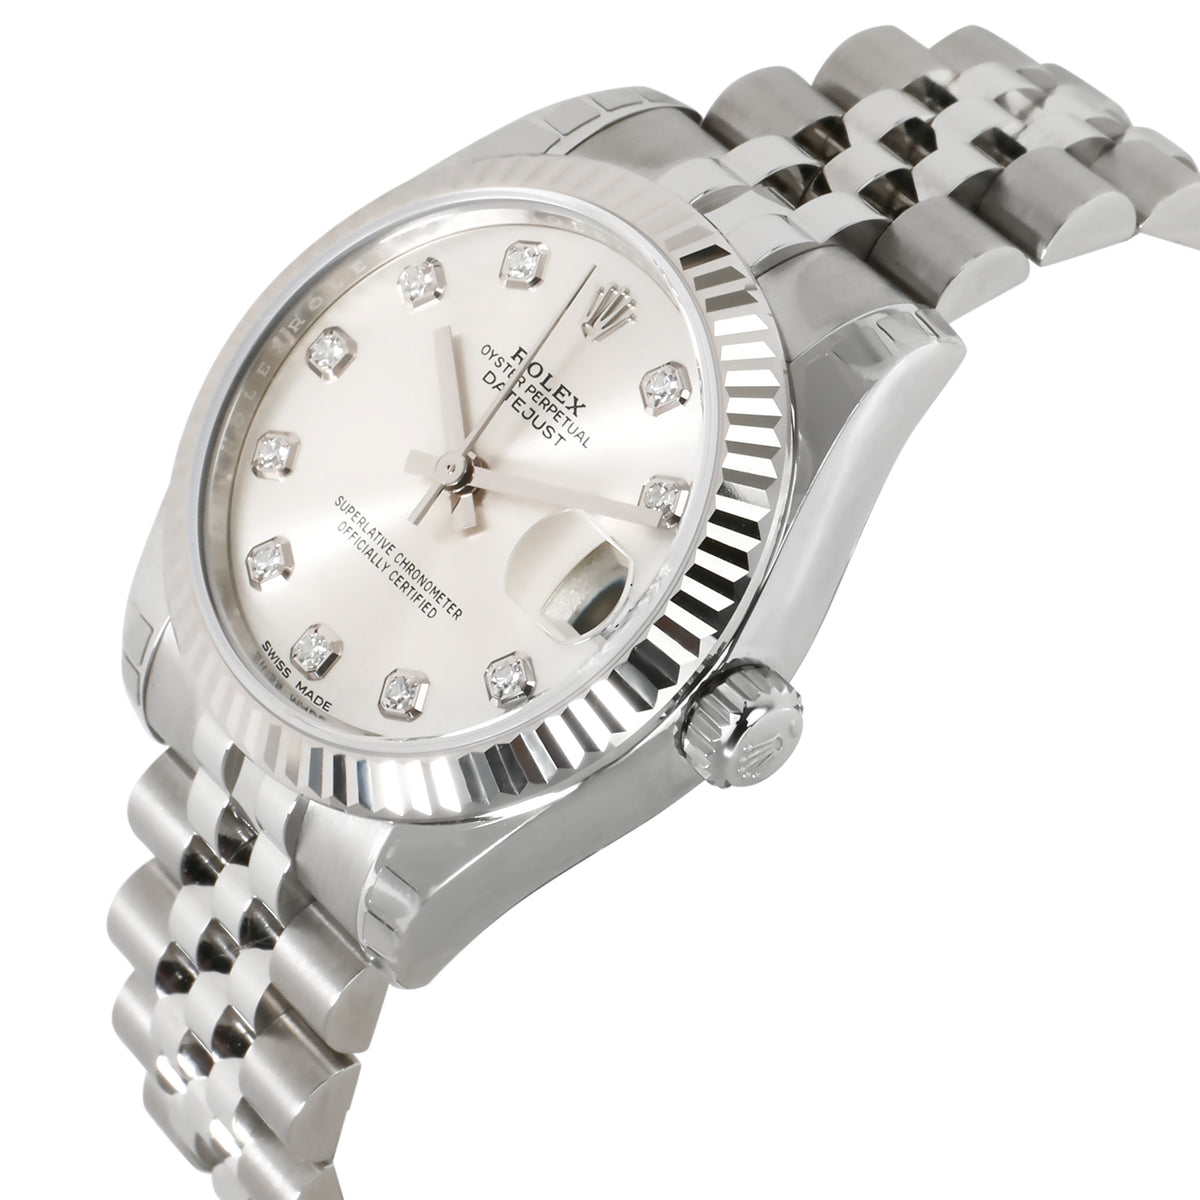 Rolex Datejust 178274 Unisex Watch in 18kt Stainless Steel/White Gold